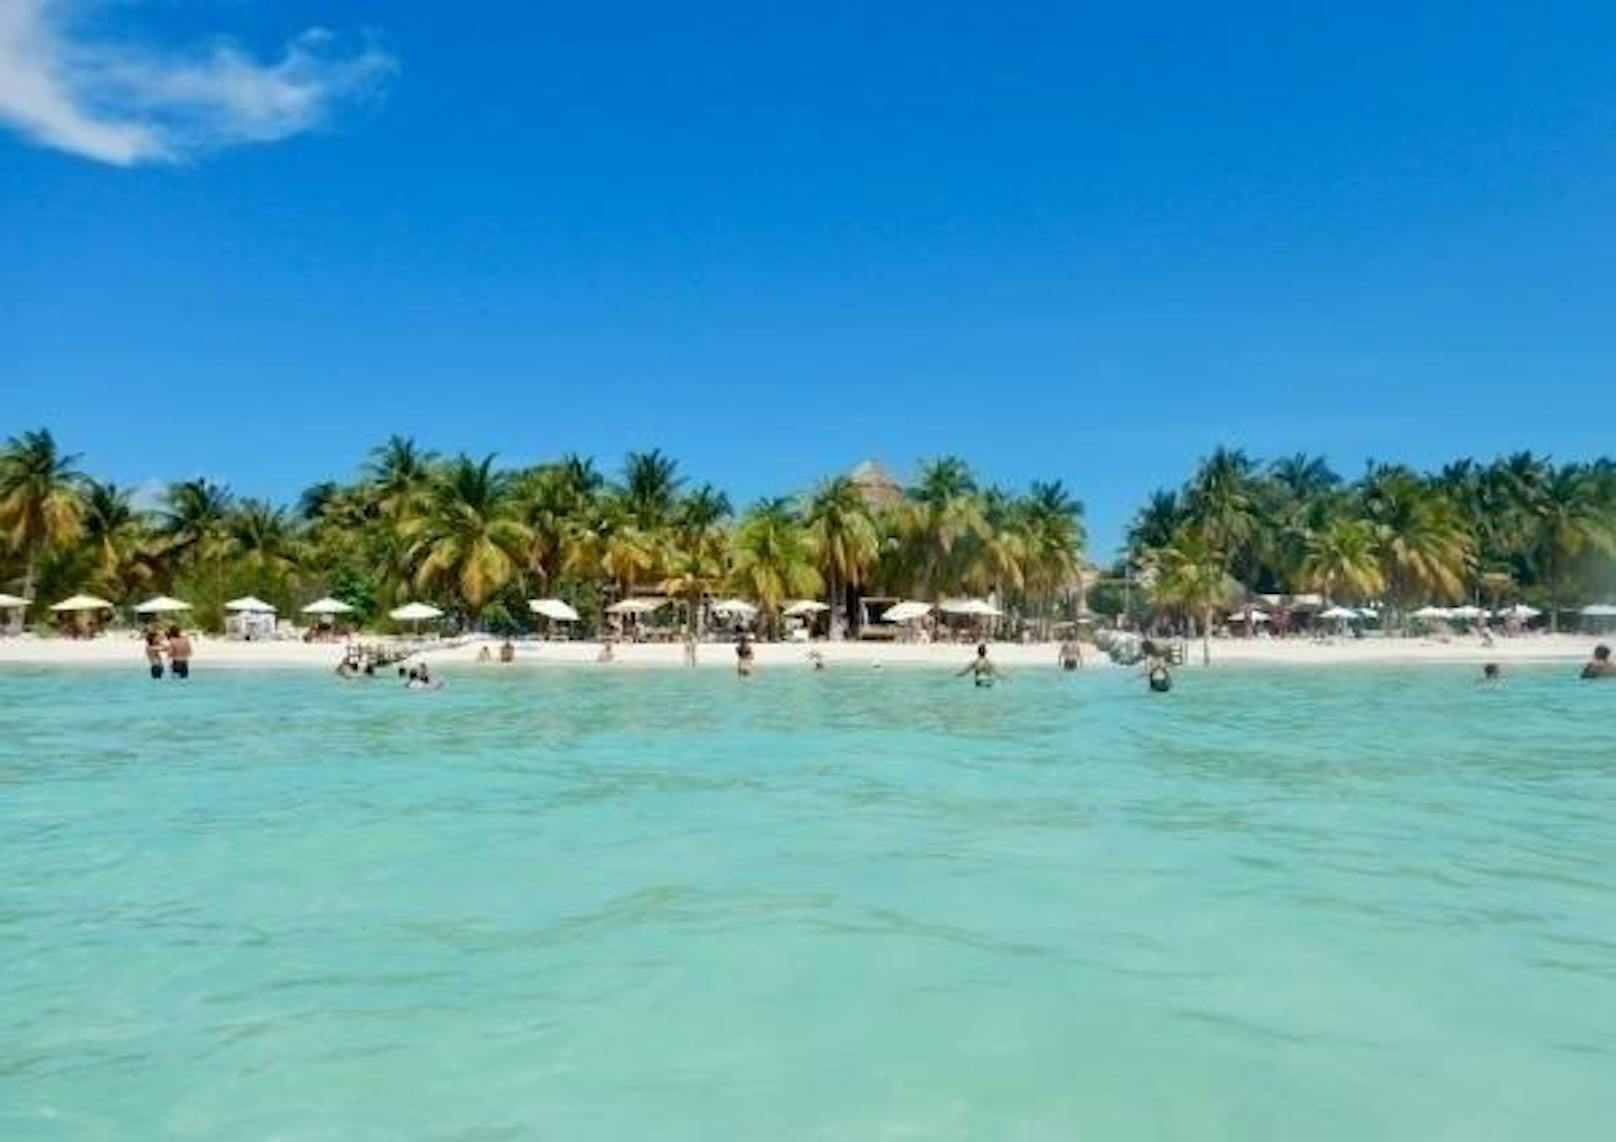 <b>Platz zehn: Playa Norte, Isla Mujeres, Mexiko (Yucatán-Halbinsel): </b>An der Playa Norte laden verschiedene Beach-Bars dazu ein, seinen Drink in einer Schaukel zu genießen und den Blick über das klare Wasser schweifen zu lassen. "Ein fantastischer Ort zum Entspannen. Abends haben wir einen traumhaften Sonnenuntergang erlebt", schreibt ein Nutzer.